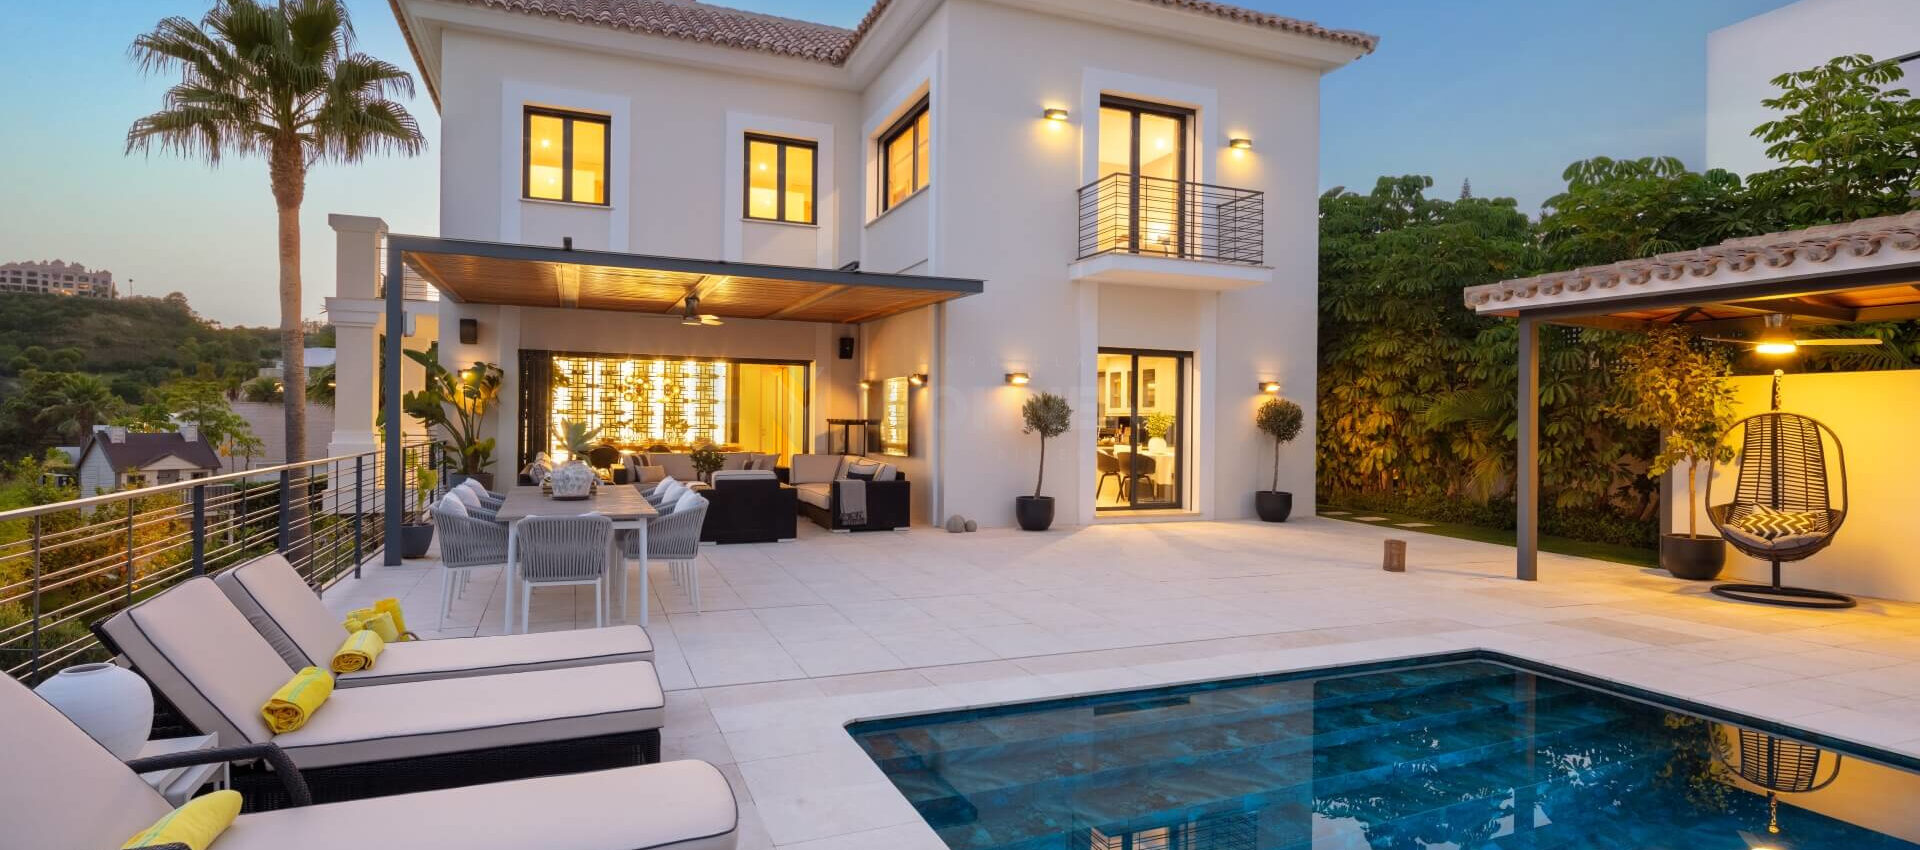 Hervorragende moderne Villa mit Panoramablick auf die Küste von Marbella